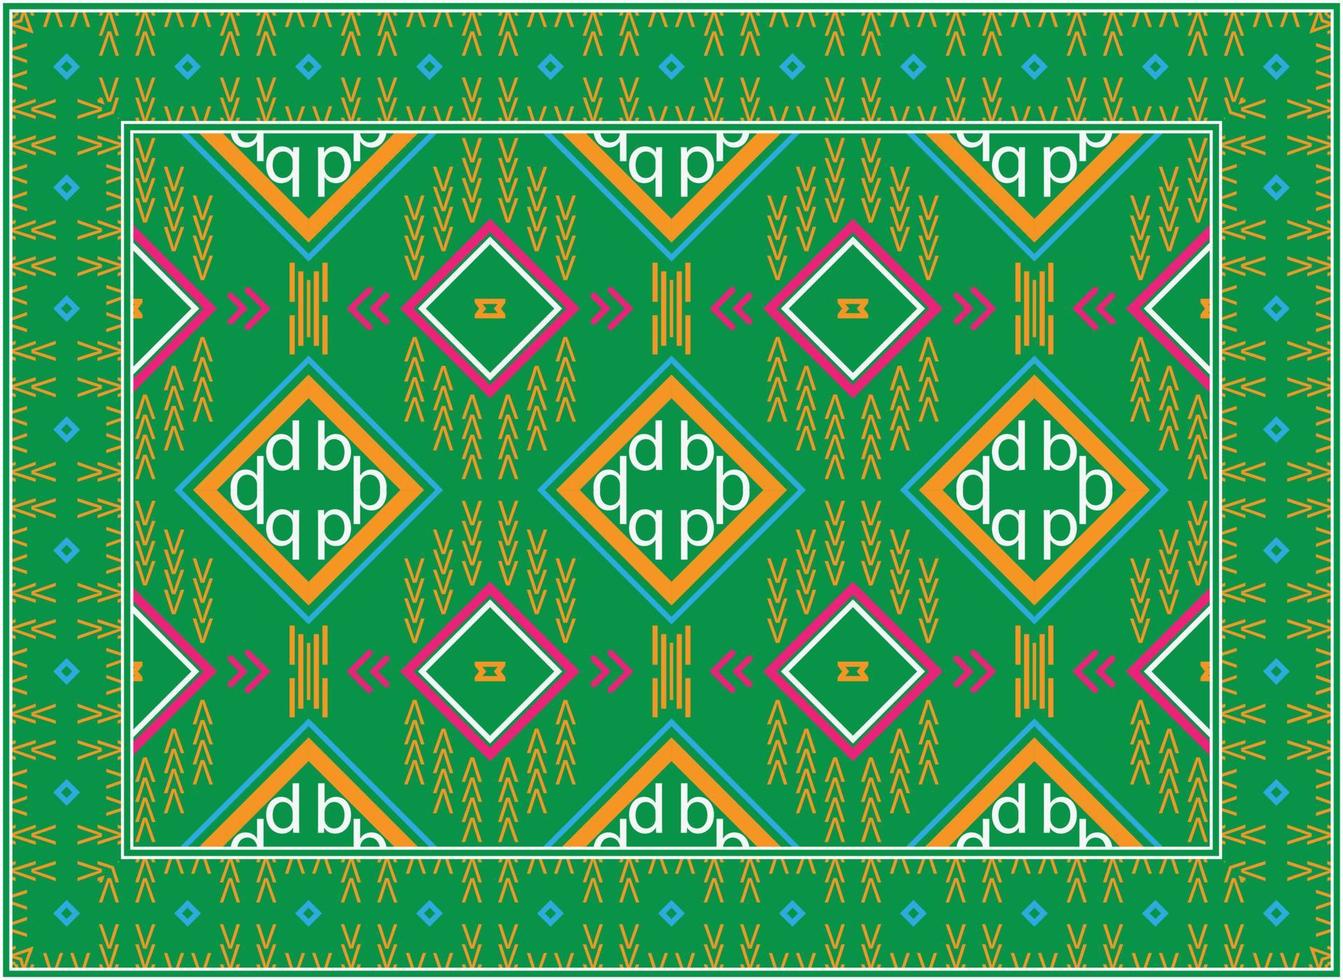 modern Perzisch tapijt, Afrikaanse motief modern Perzisch tapijt, Afrikaanse etnisch aztec stijl ontwerp voor afdrukken kleding stof tapijten, handdoeken, zakdoeken, sjaals tapijt, vector